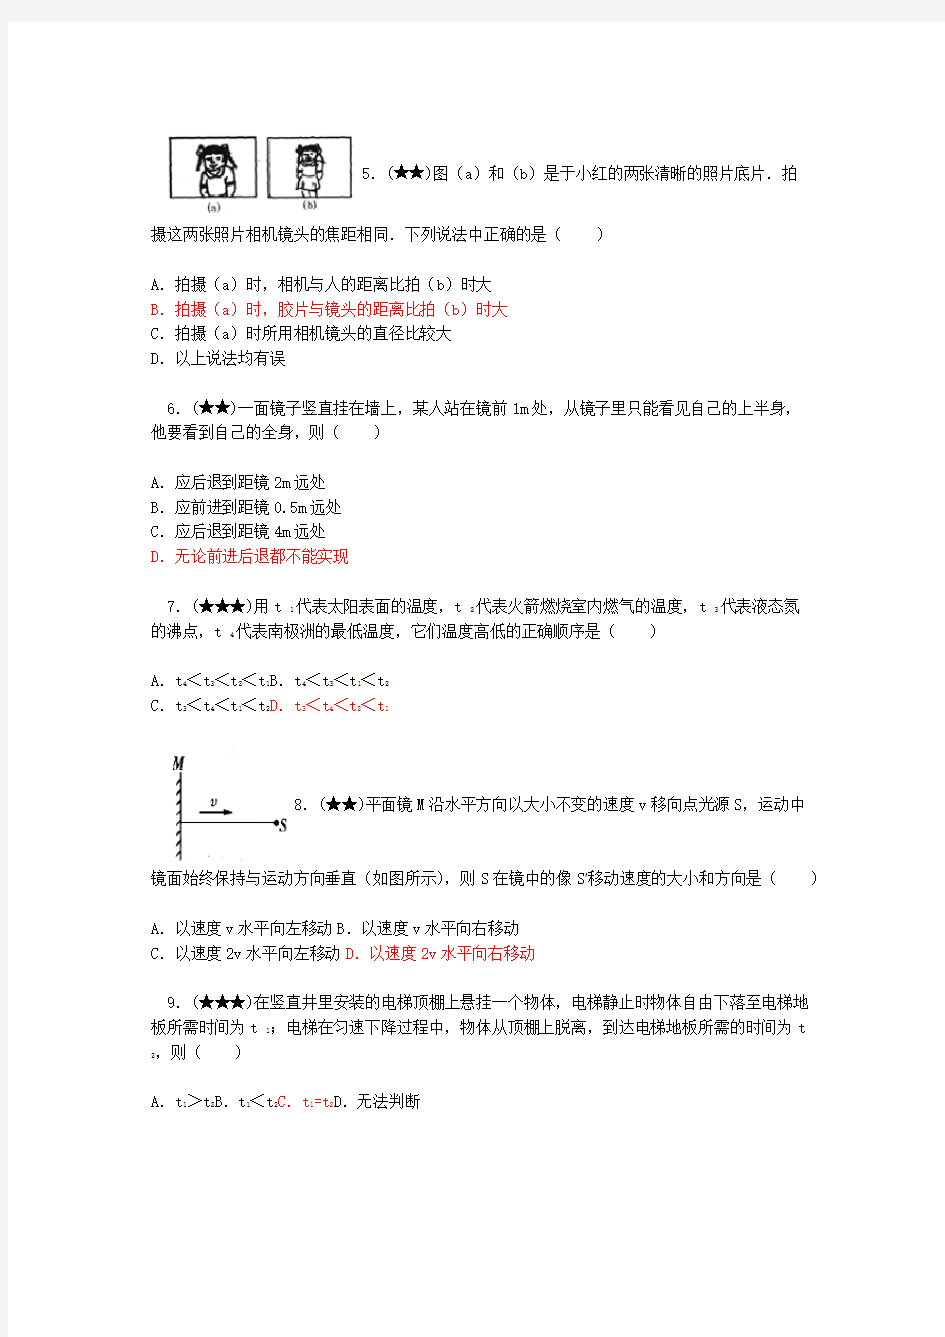 2010年江苏省第十六届初中物理竞赛模拟试卷(一)